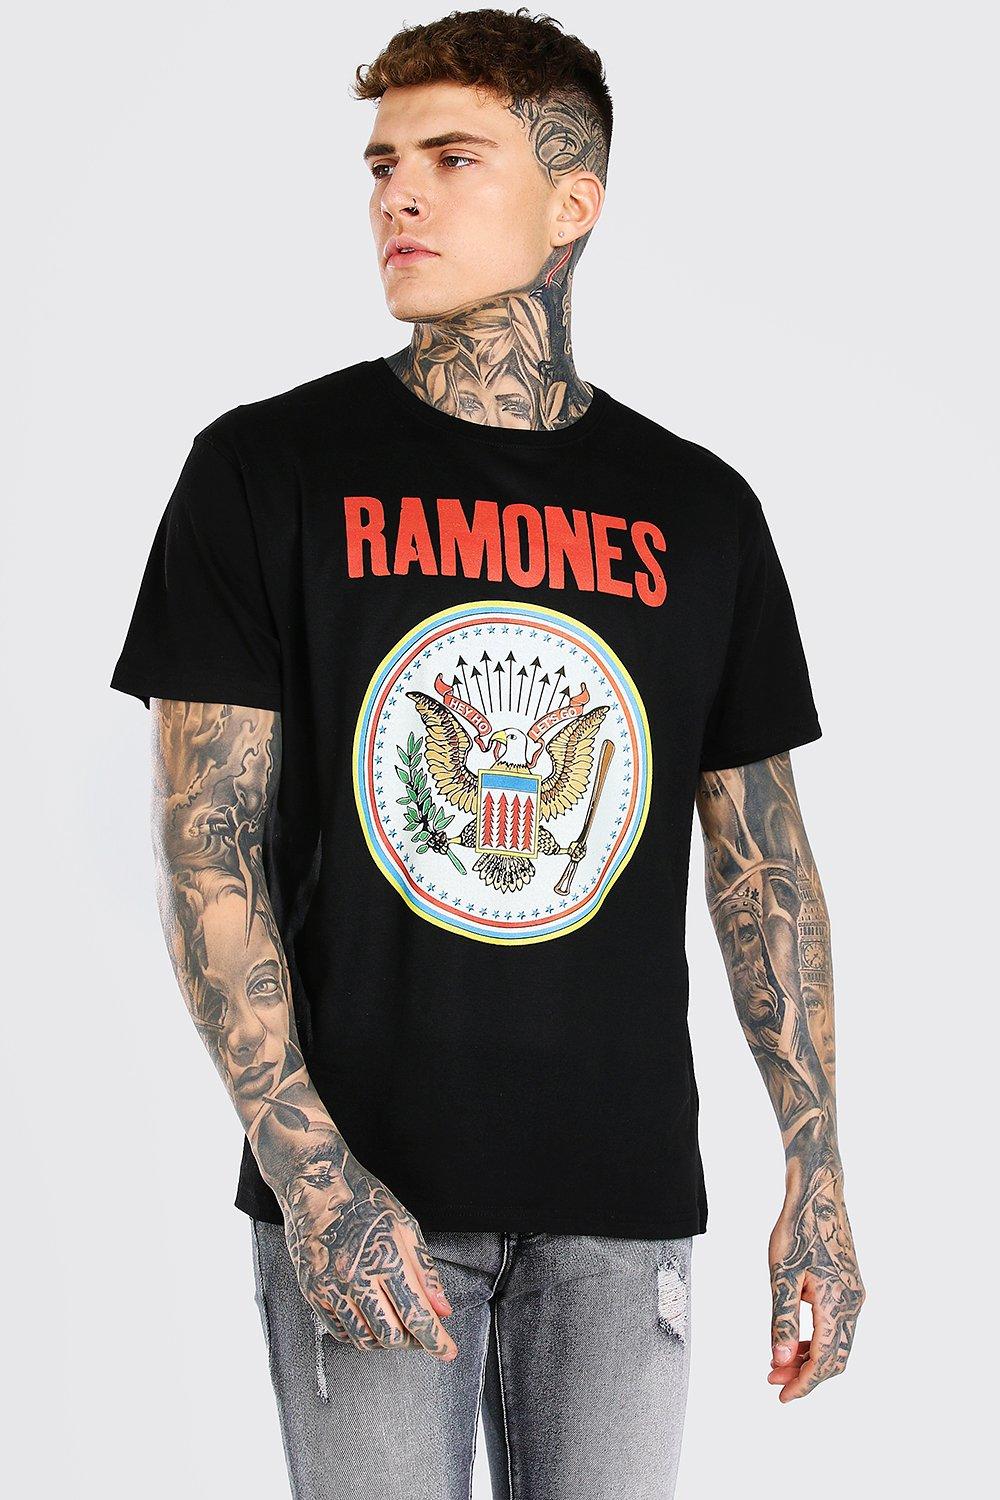 T license. Черное платье Ramones. Хардин в футболке Рамонс.